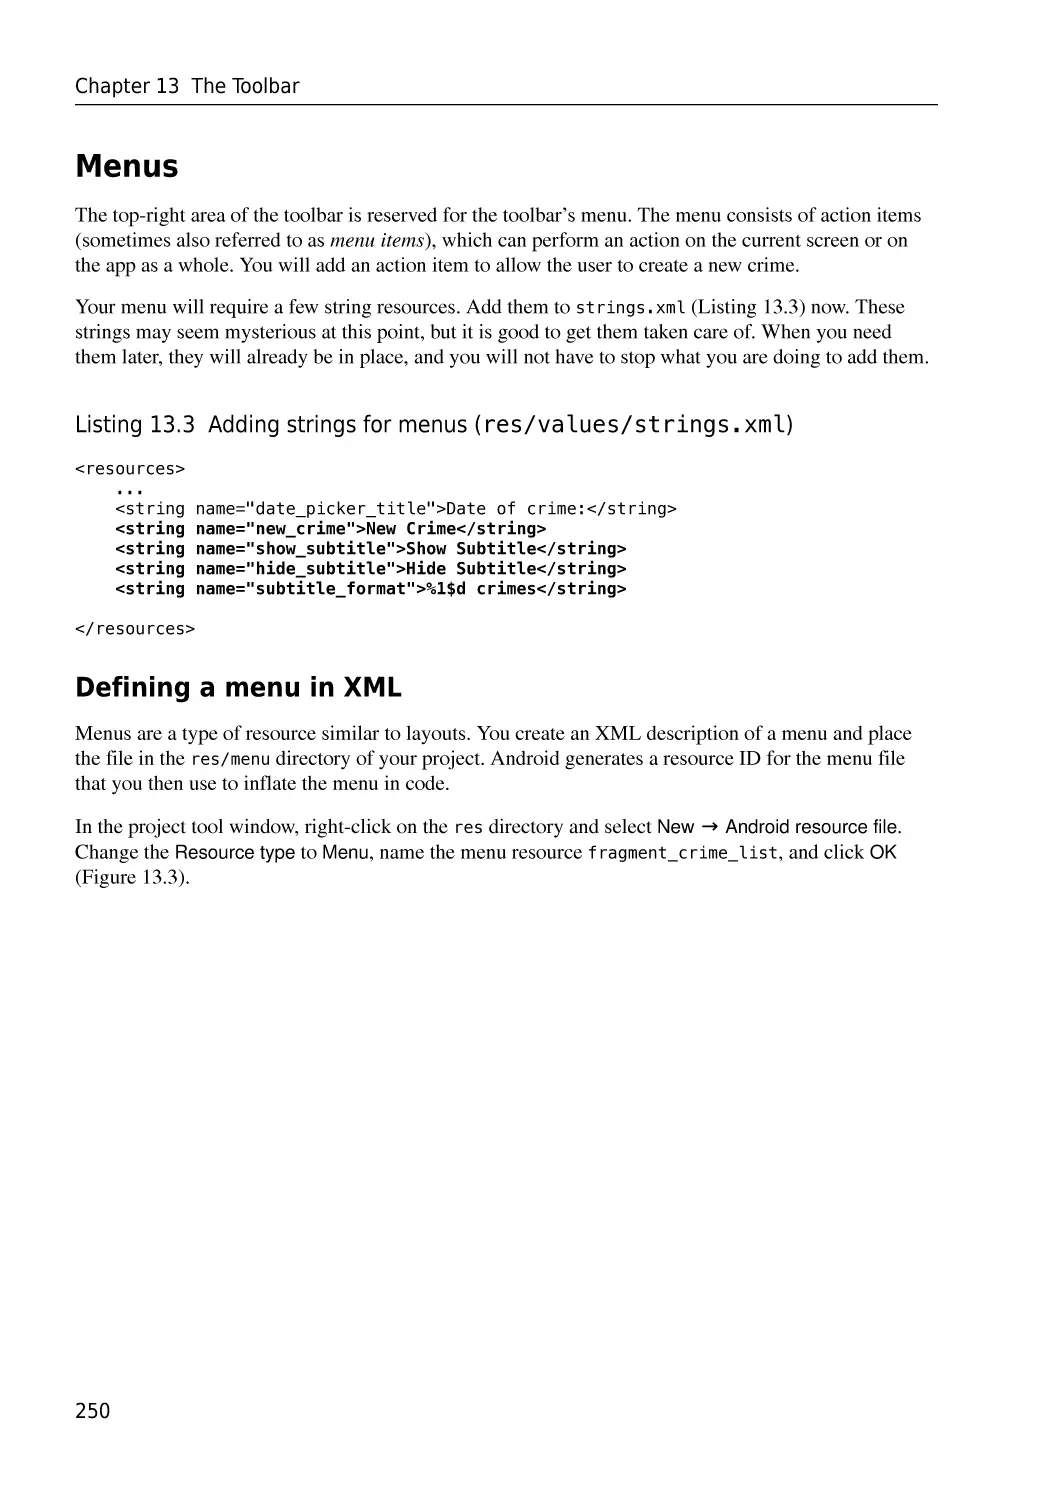 Menus
Defining a menu in XML